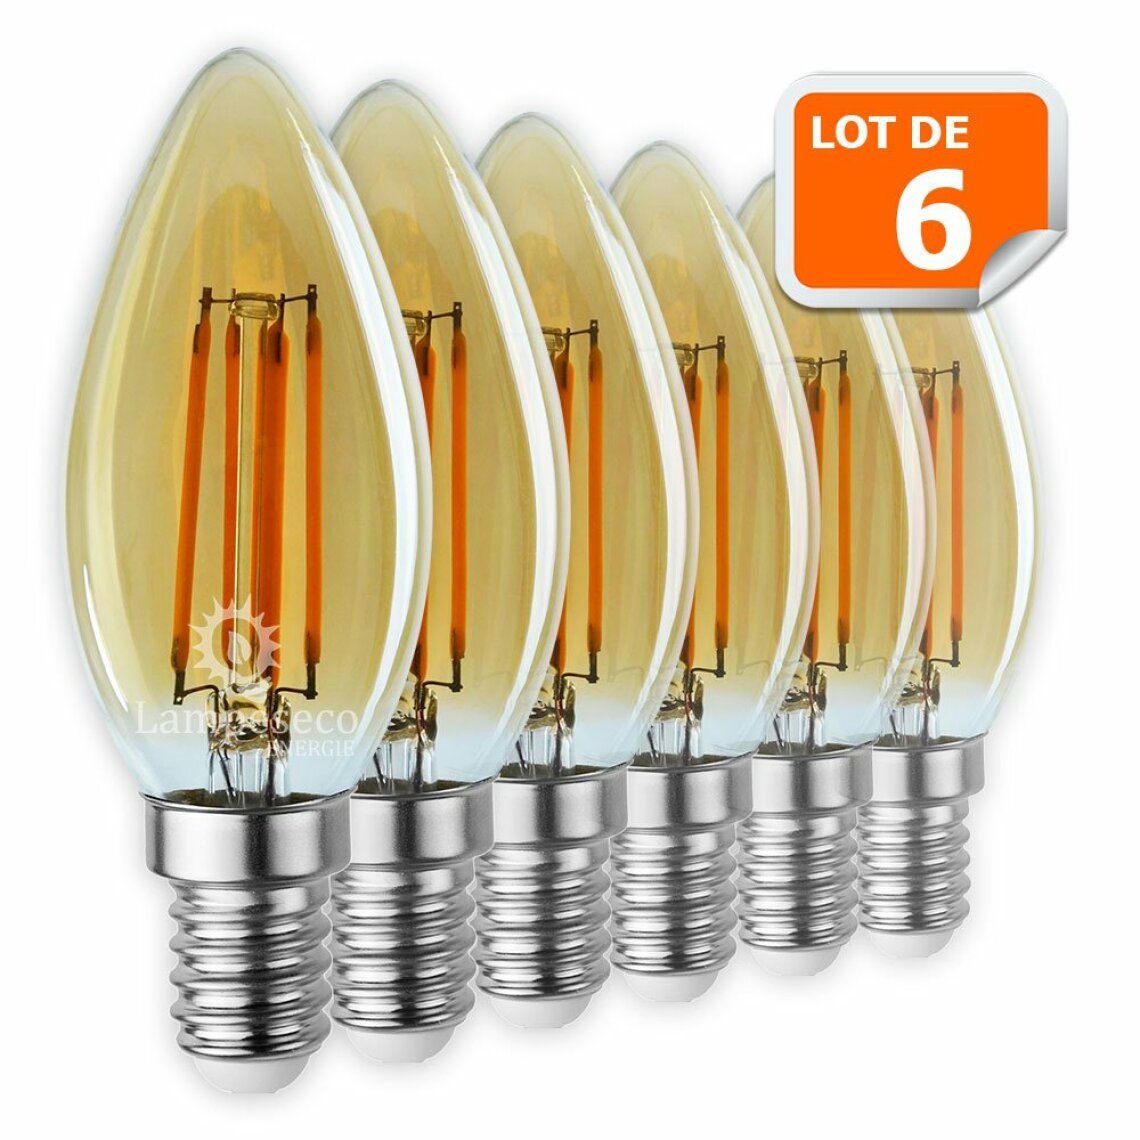 Lampesecoenergie - Lot de 6 Ampoules Led Flamme Filament Doré 4 watt (éq. 42 Watt) Culot E14 - Ampoules LED